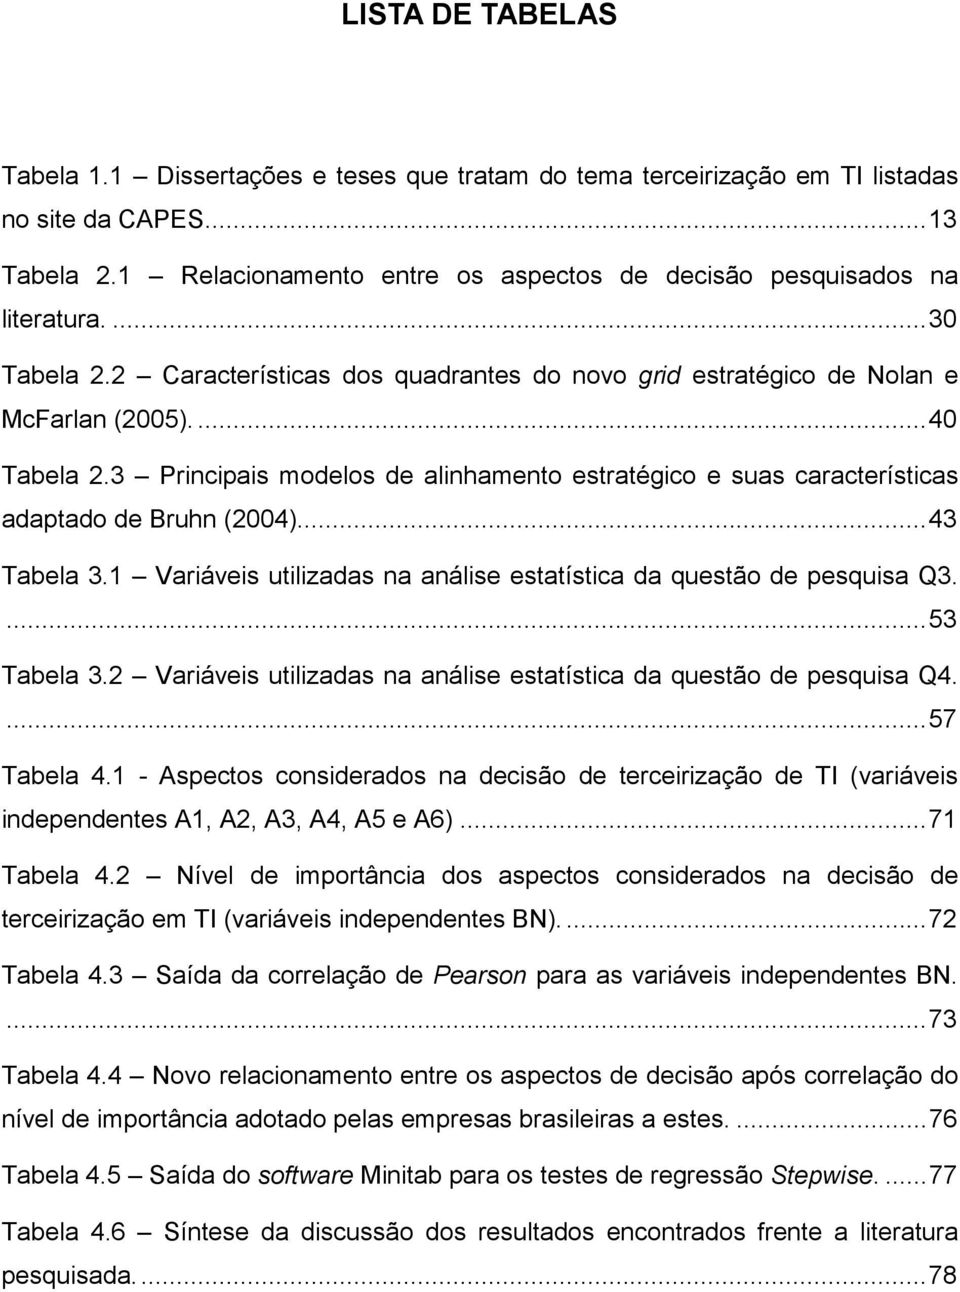 3 Principais modelos de alinhamento estratégico e suas características adaptado de Bruhn (2004)...43 Tabela 3.1 Variáveis utilizadas na análise estatística da questão de pesquisa Q3....53 Tabela 3.